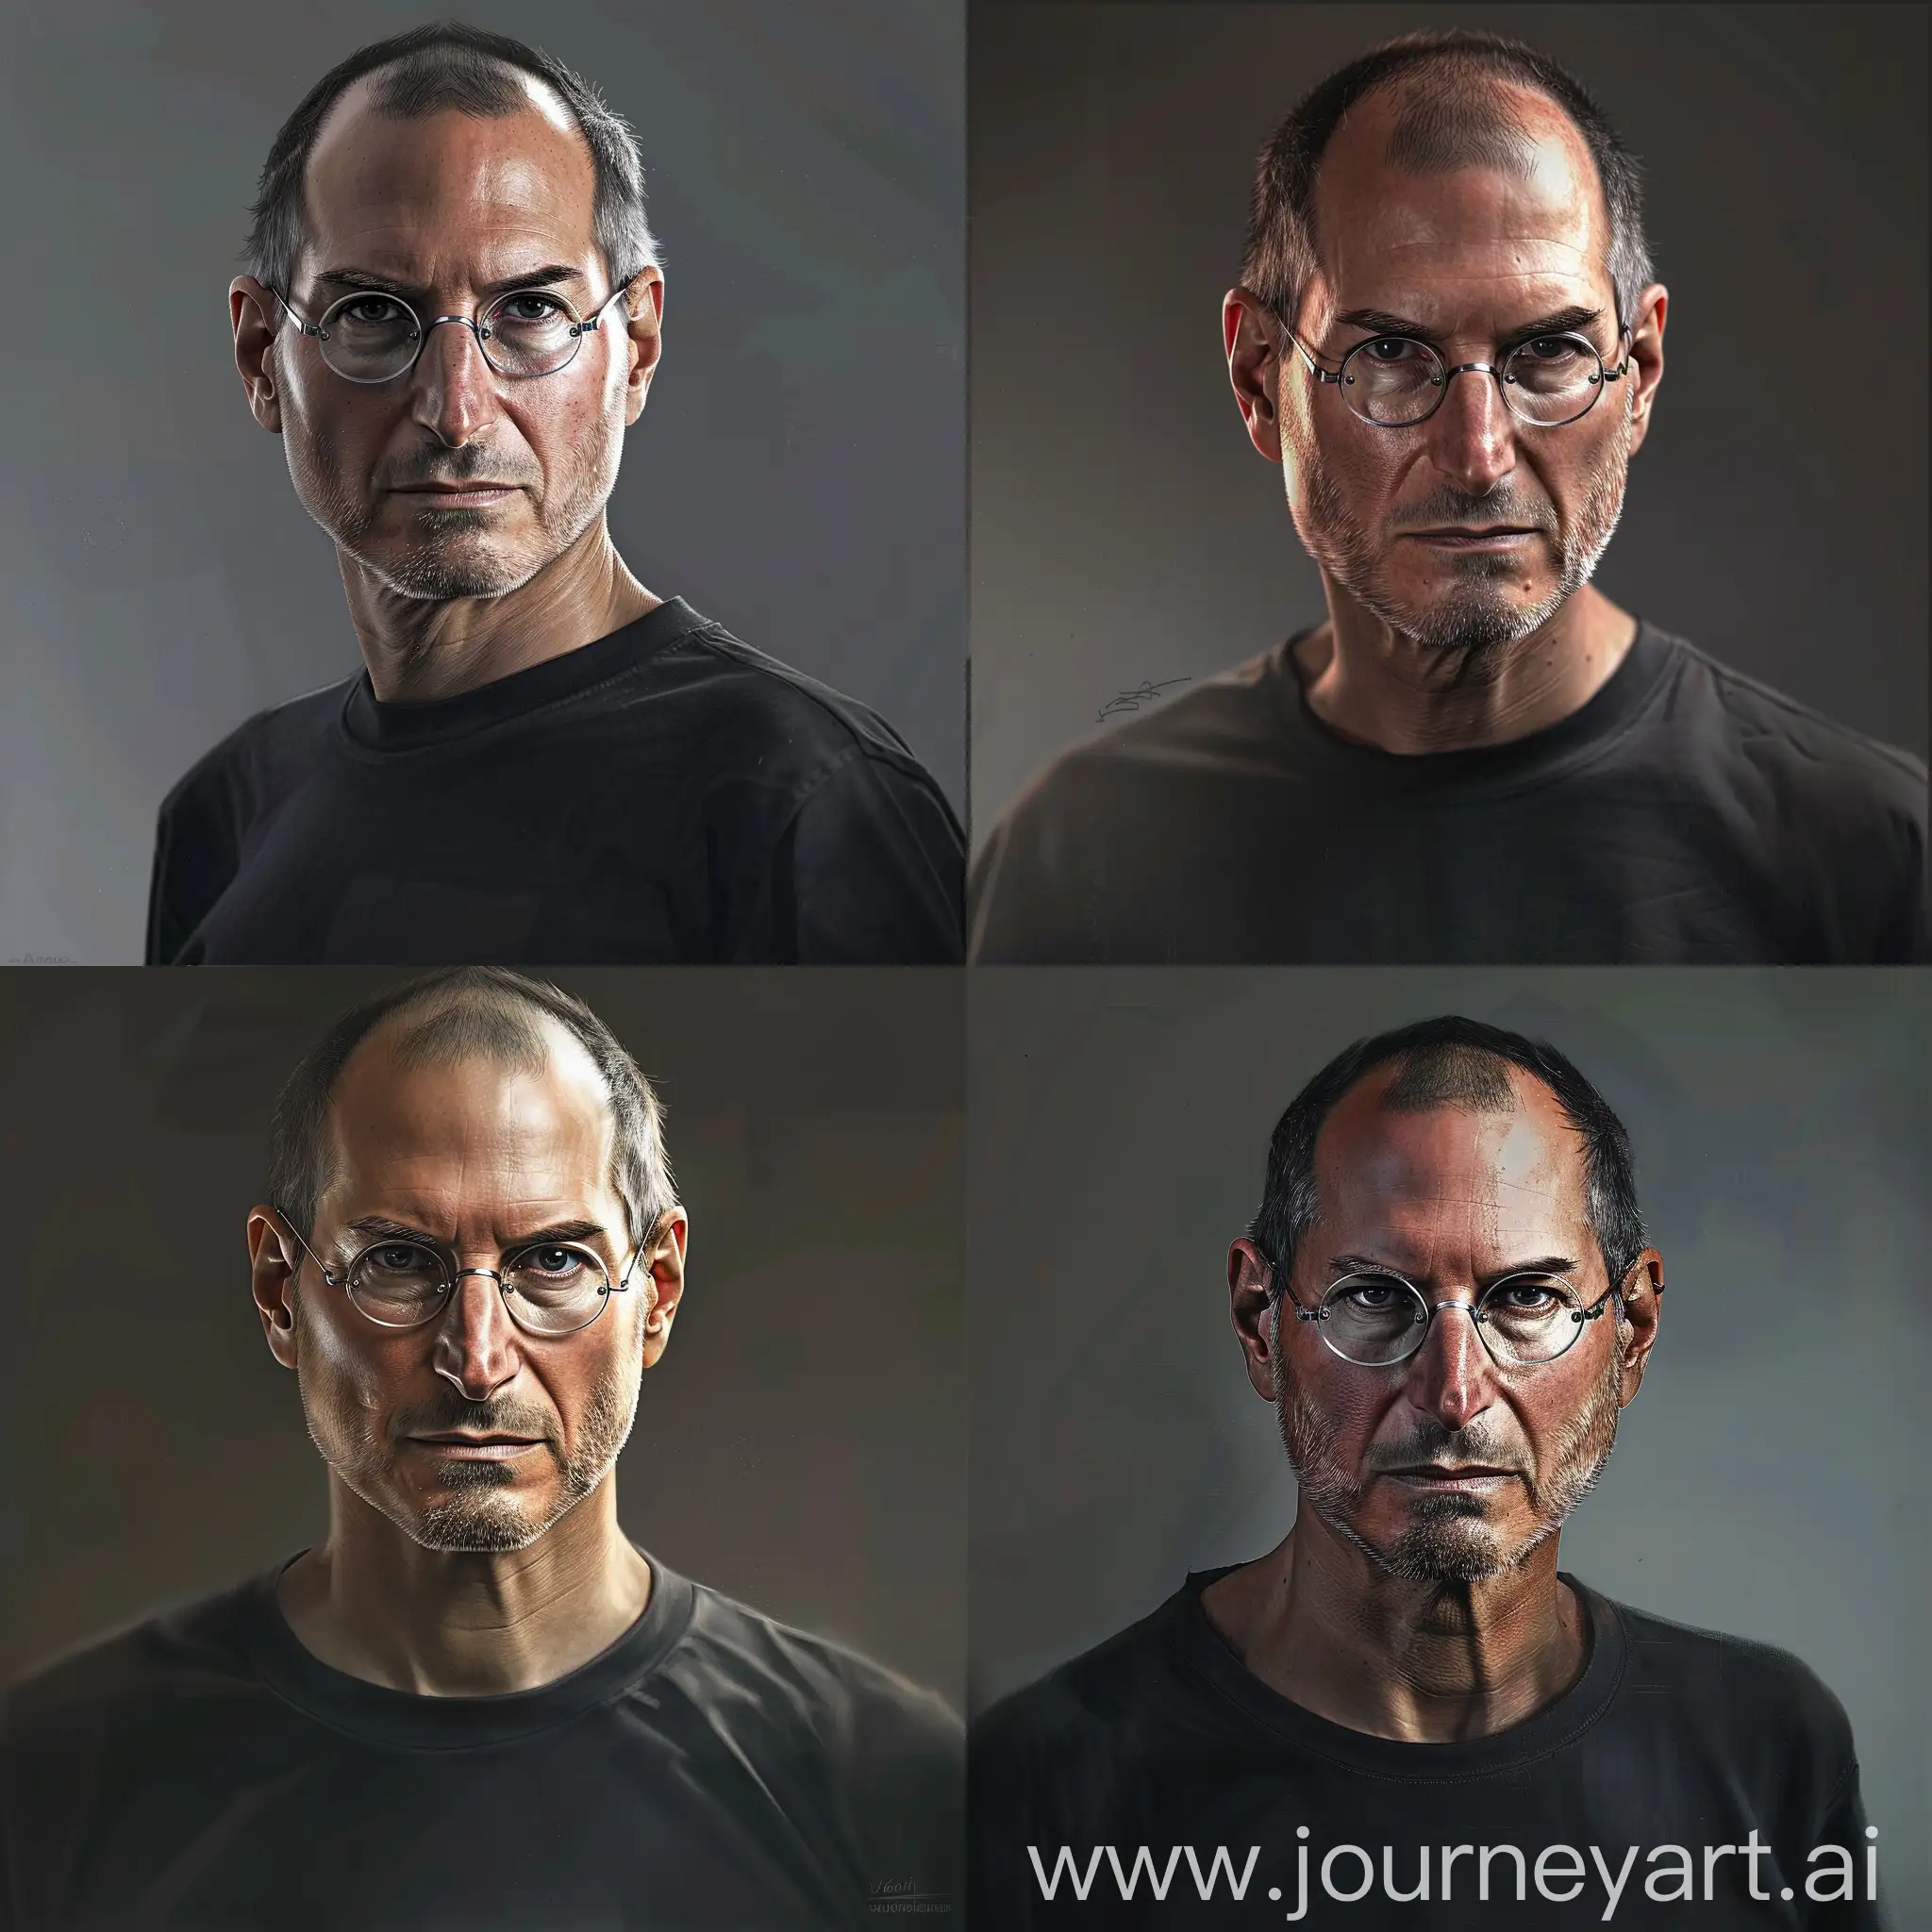 "Créez une image d'un portrait hyper-réaliste de Steve Jobs en gros plan, regardant directement vers le spectateur, portant un tee-shirt noir. Assurez-vous que le visage de Steve Jobs est capturé avec une grande précision et que l' l'expression faciale reflète sa détermination et son charisme. Le cadrage doit être centré et mettre en évidence les traits distinctifs de Steve Jobs, tels que ses lunettes et sa calvitie reconnaissable. des reflets subtils pour ajouter du réalisme à l'image."

